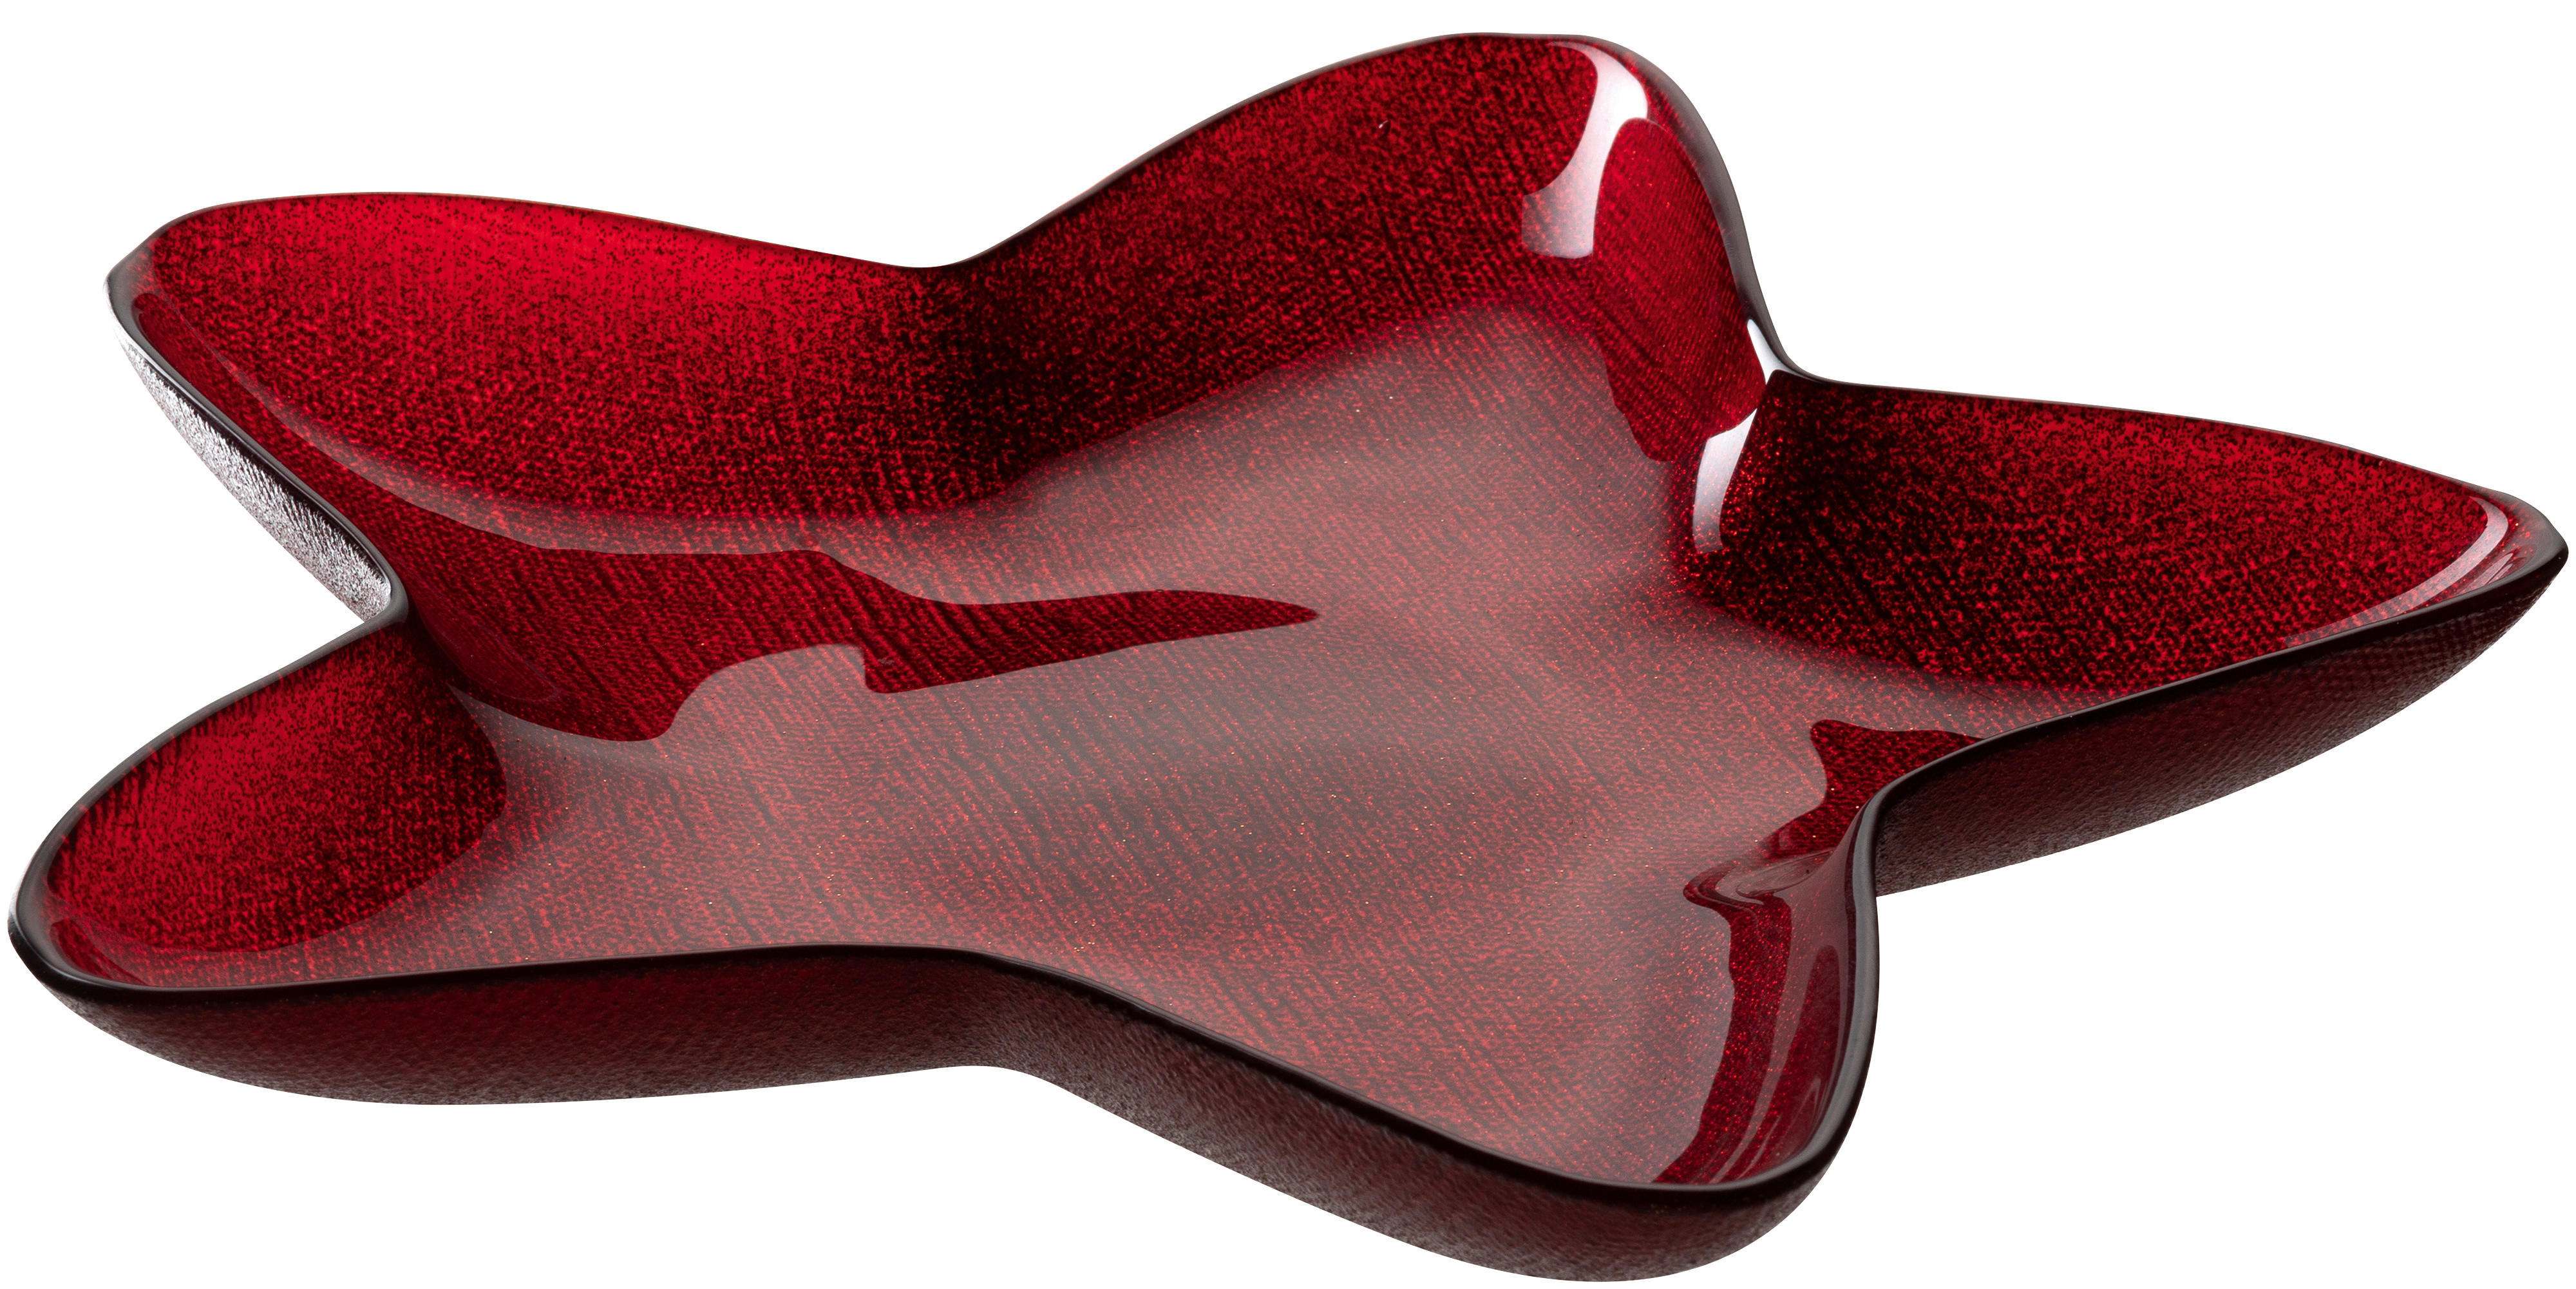 MISKA, sklo, 29/3/29 cm  - červená, Lifestyle, sklo (29/3/29cm) - Leonardo